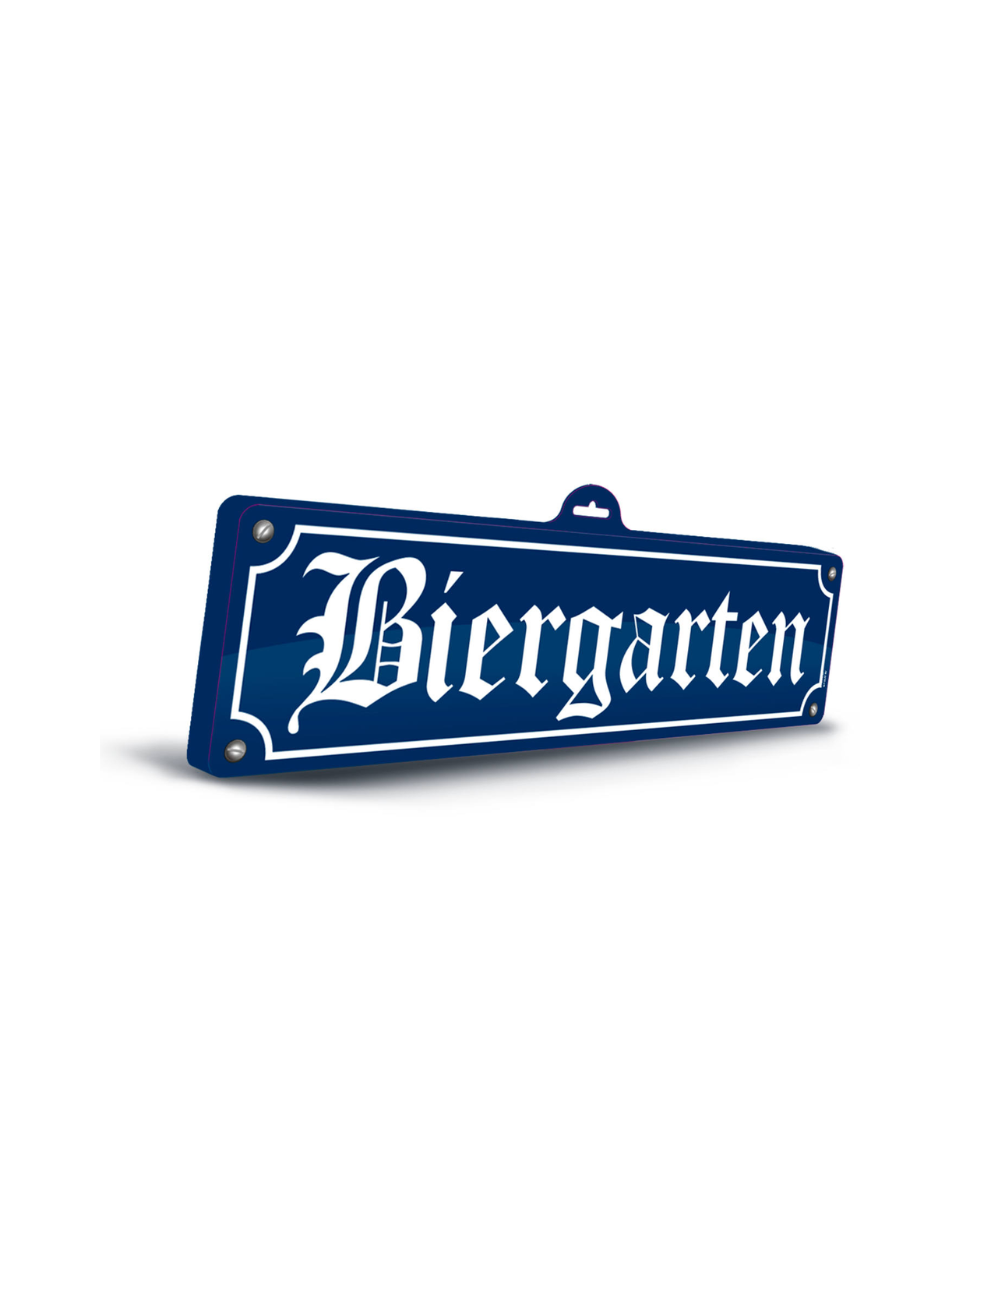 Panneau "Biergarten"